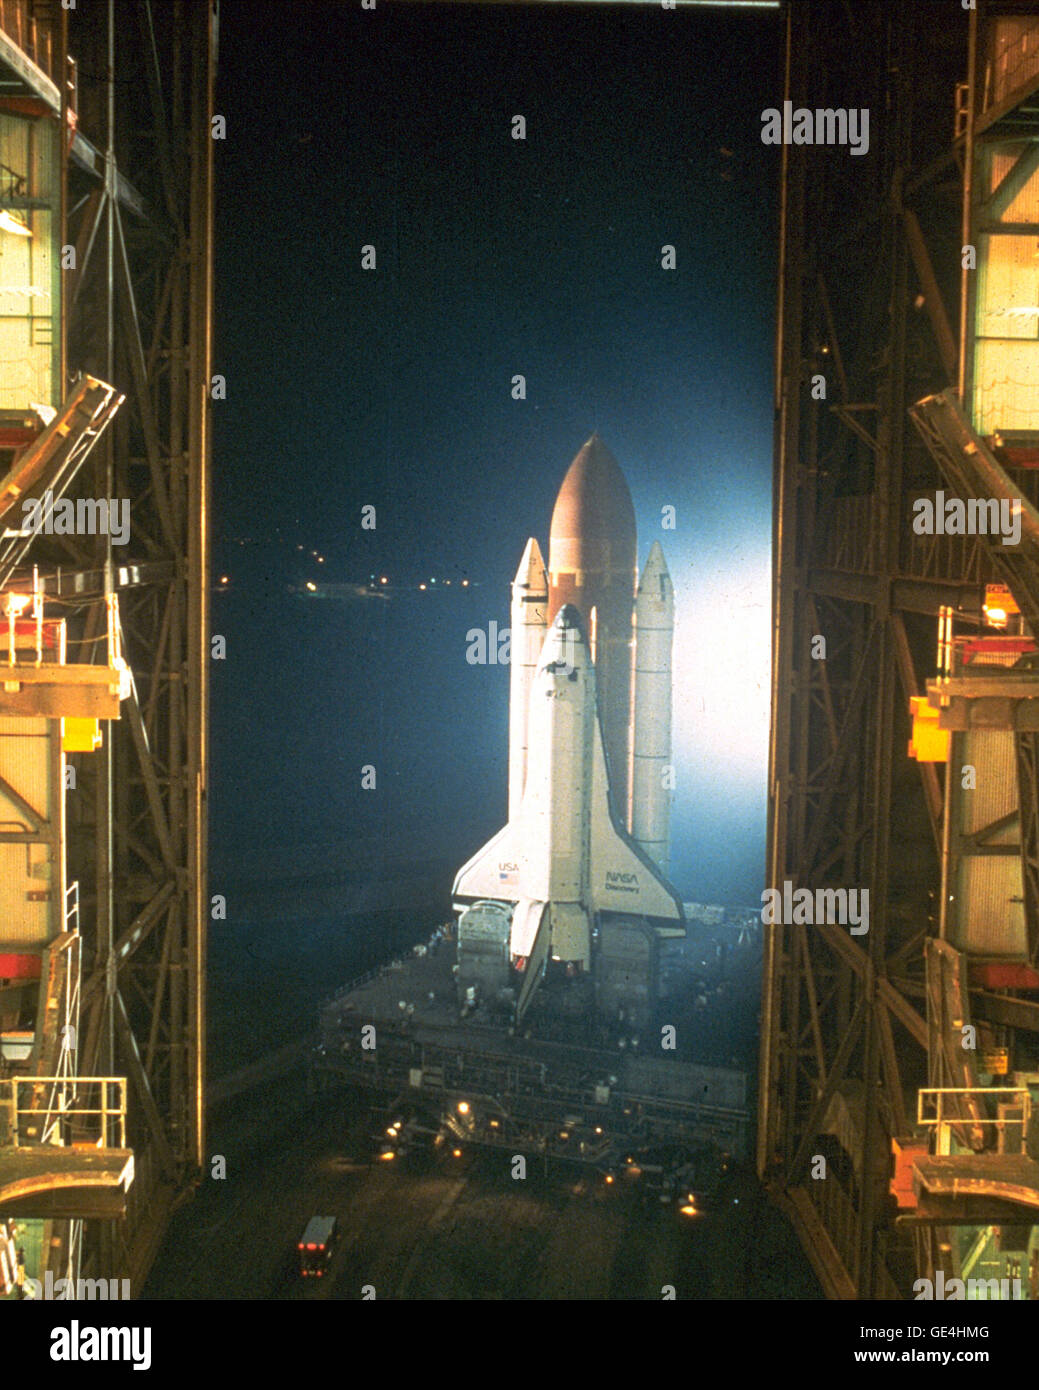 Ein Blick von innen Bucht drei des Fahrzeugs Assembly Building (VAB) zeigt das Space Shuttle Discovery in weiße Xenon-Licht gewaschen, da es eine nächtliche Abfahrt von der VAB auf dem Weg zum Pad 39 b macht. Entdeckung war für die Mission STS-26 fliegen ausrollen. Die primäre Nutzlast war das TDRS-C-Satelliten. Erste Bewegung in der Shuttle Zug aus der VAB auf das Pad kam um 12:50 Uhr 4. Juli 1988.   Bild-Nr.: 88PC-0675 Datum: 4. Juli 1988 Stockfoto